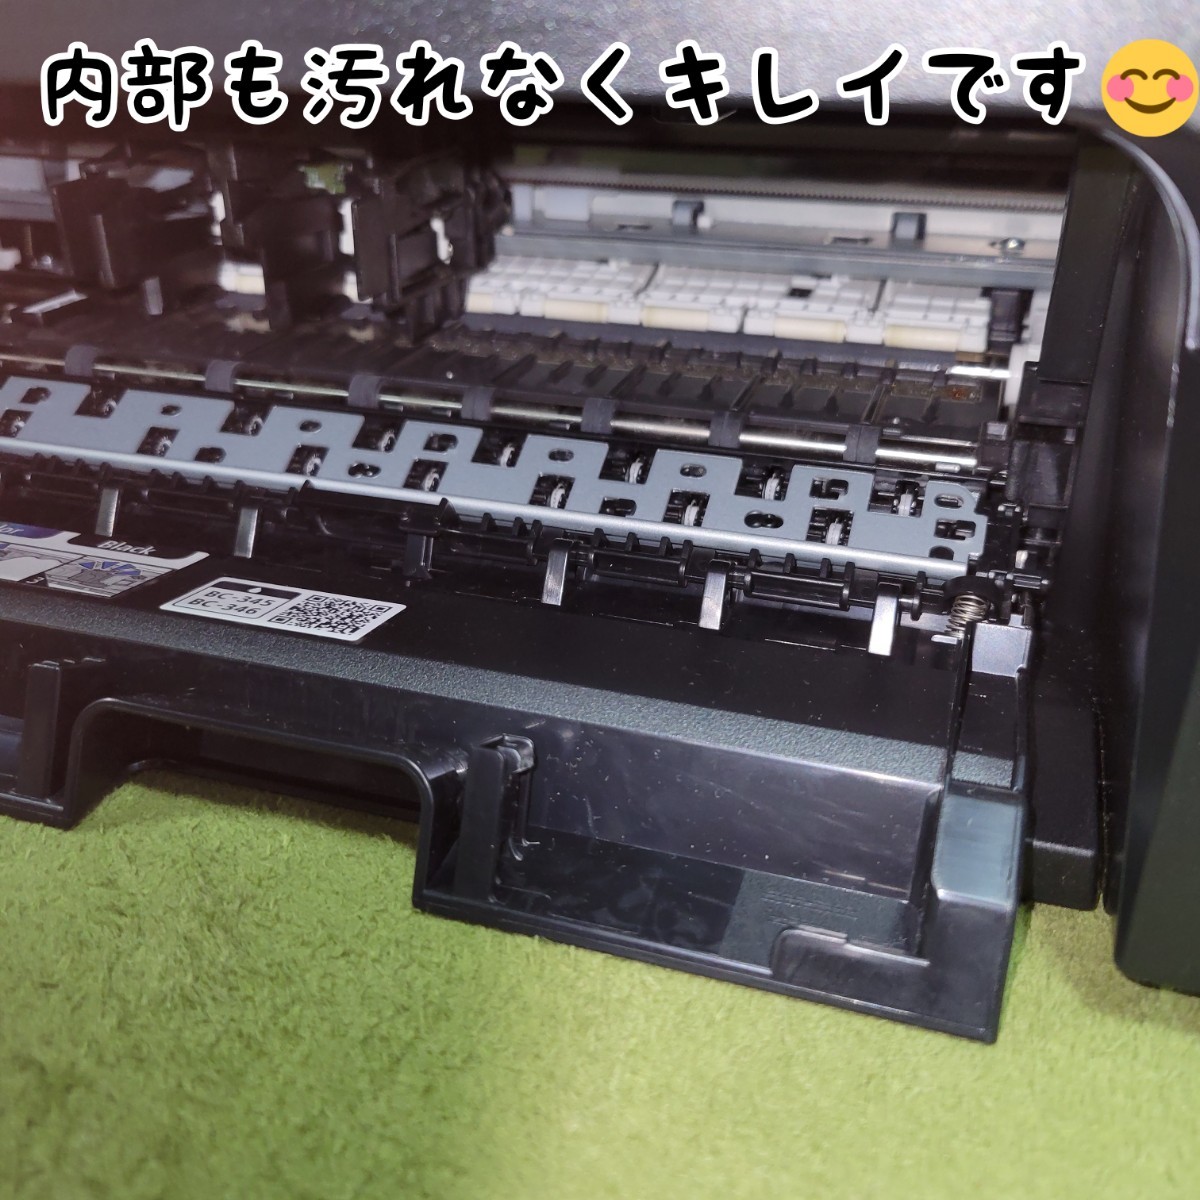 【使用少ない貴重品】 Canon キヤノン PIXUS TS3130S インクジェットプリンター 複合機 キャノンの画像3